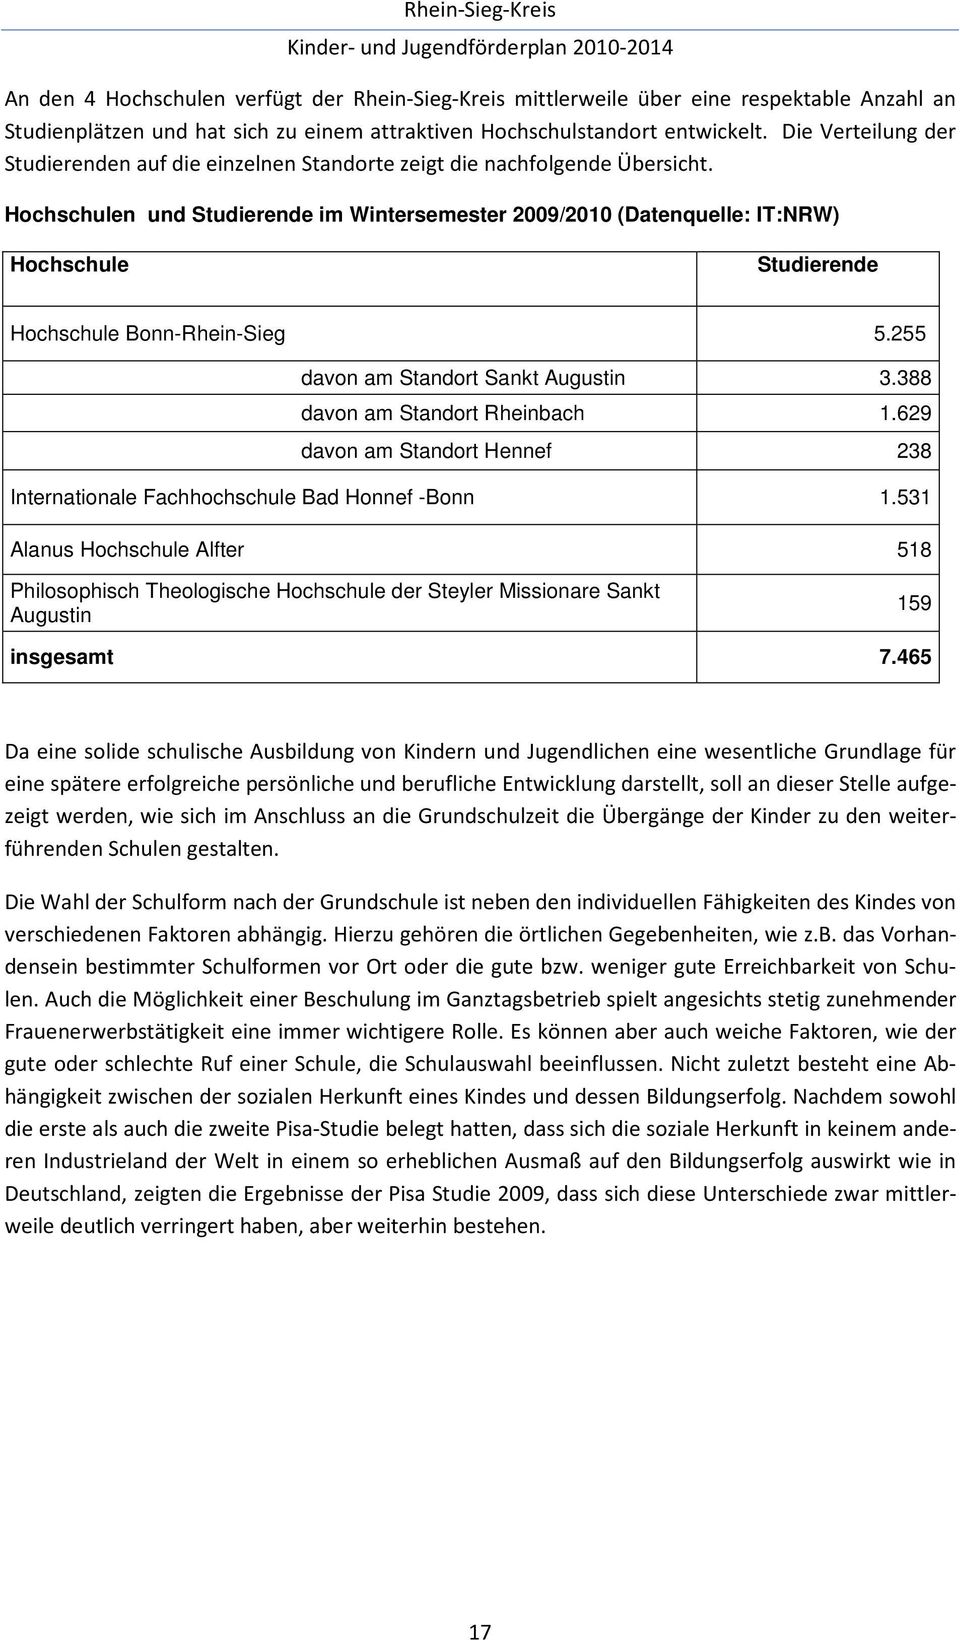 Hochschulen und Studierende im Wintersemester 2009/2010 (Datenquelle: IT:NRW) Hochschule Studierende Hochschule Bonn-Rhein-Sieg 5.255 davon am Standort Sankt Augustin 3.